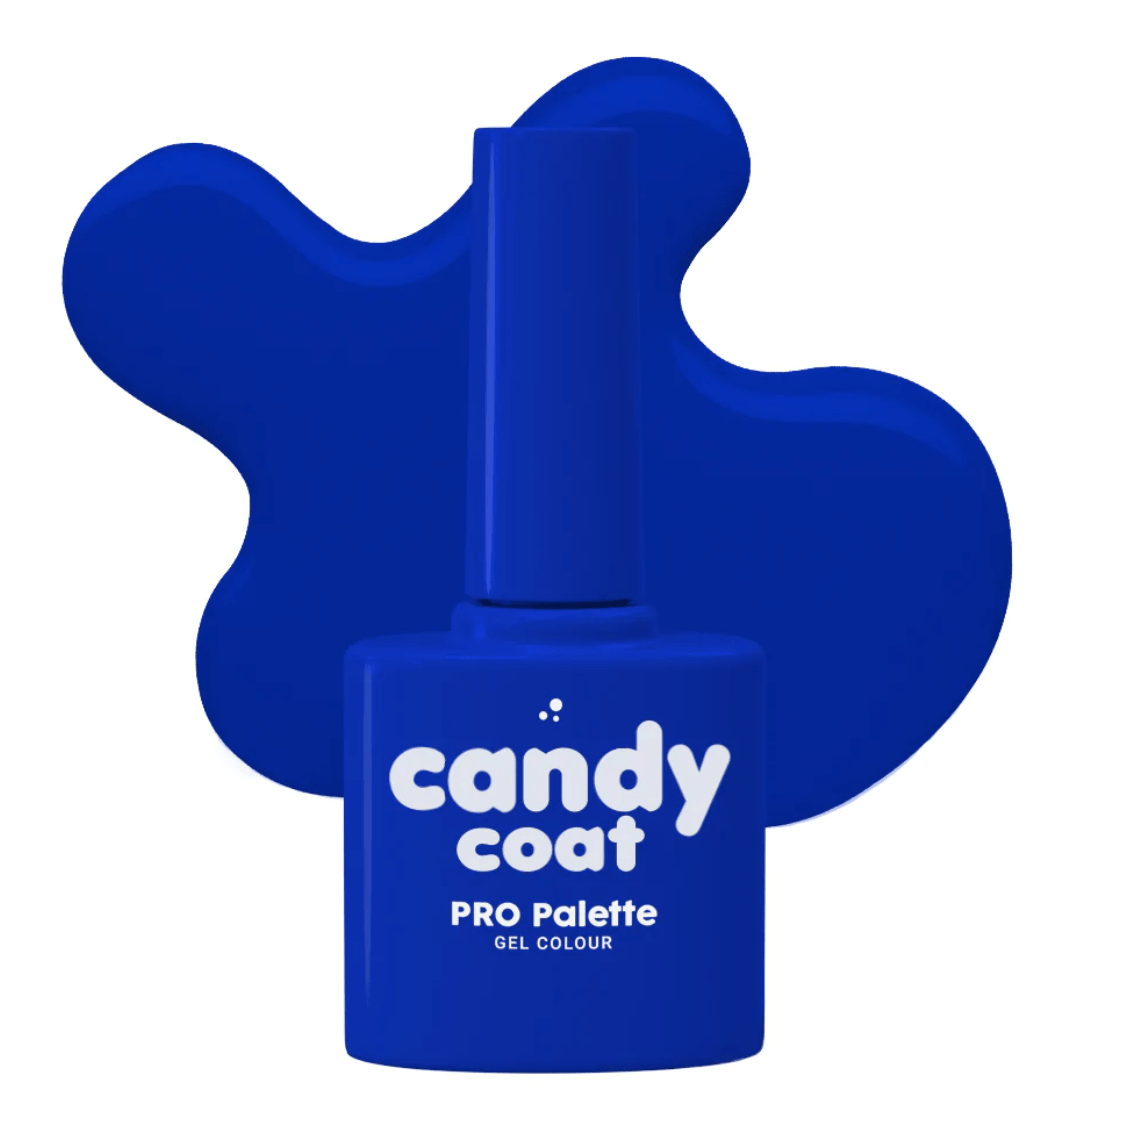 Candy Coat PRO Palette 537 Hettie